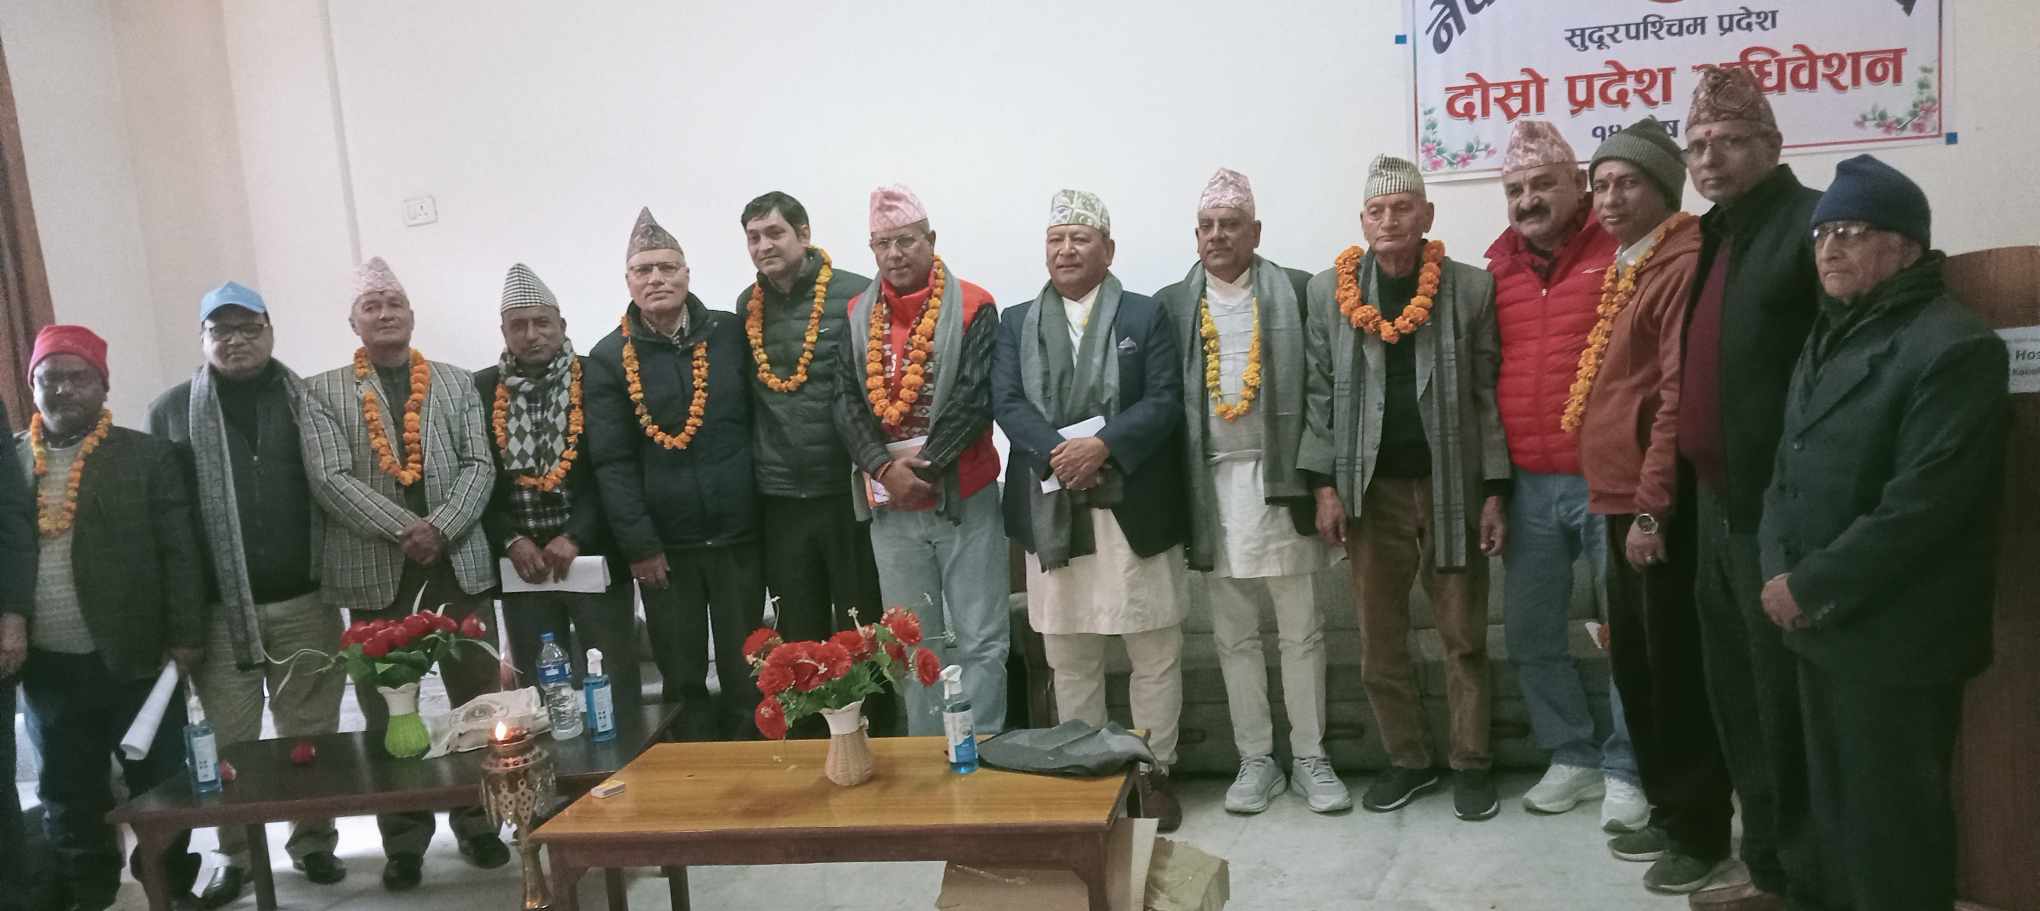 नेपाल नेत्रज्योति संघ सुदूरपश्चिम प्रदेशको दोस्रो प्रदेश अधिवेशन सम्पन्न